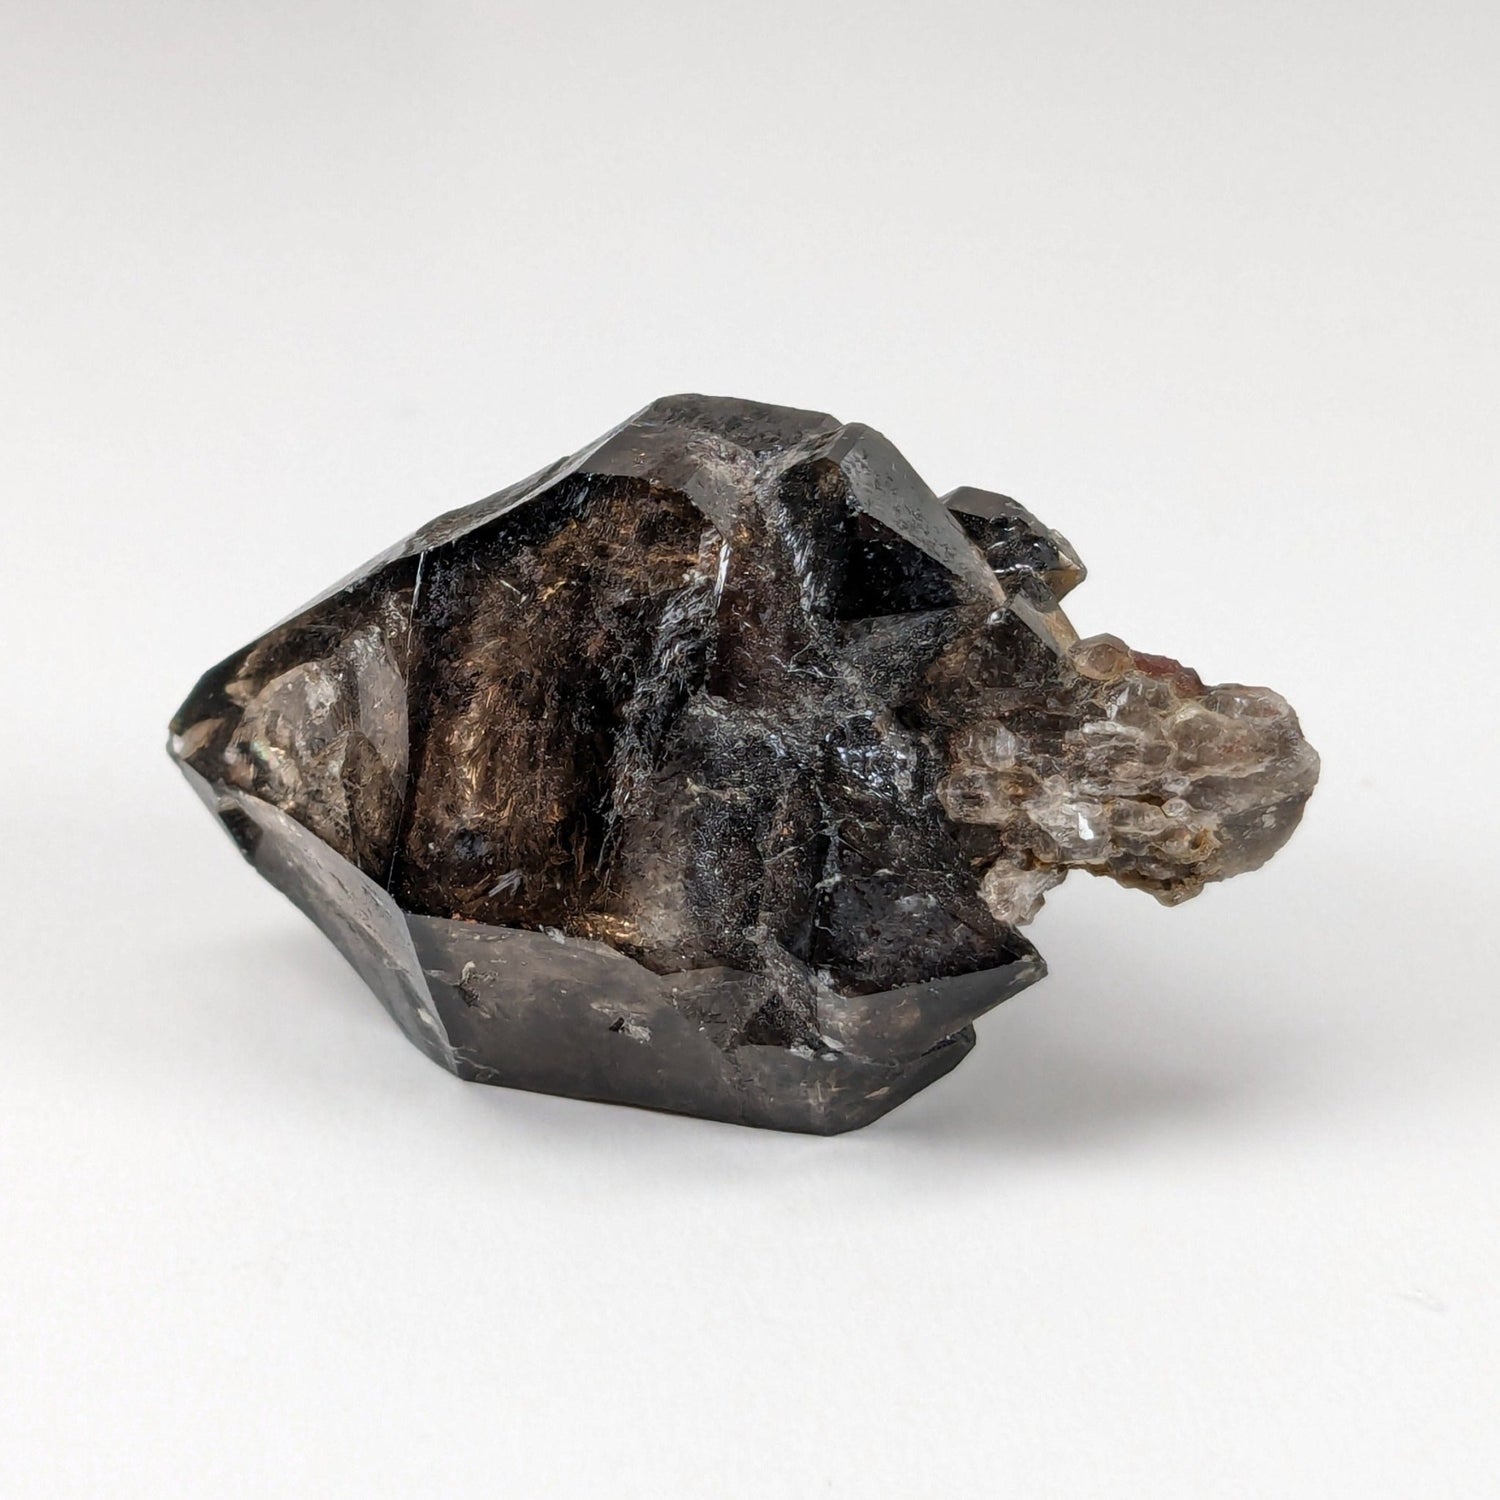 Sceptre Cristal de quartz fumé | 36mm 14gr | Mont Saint-Hilaire, Québec, Canada